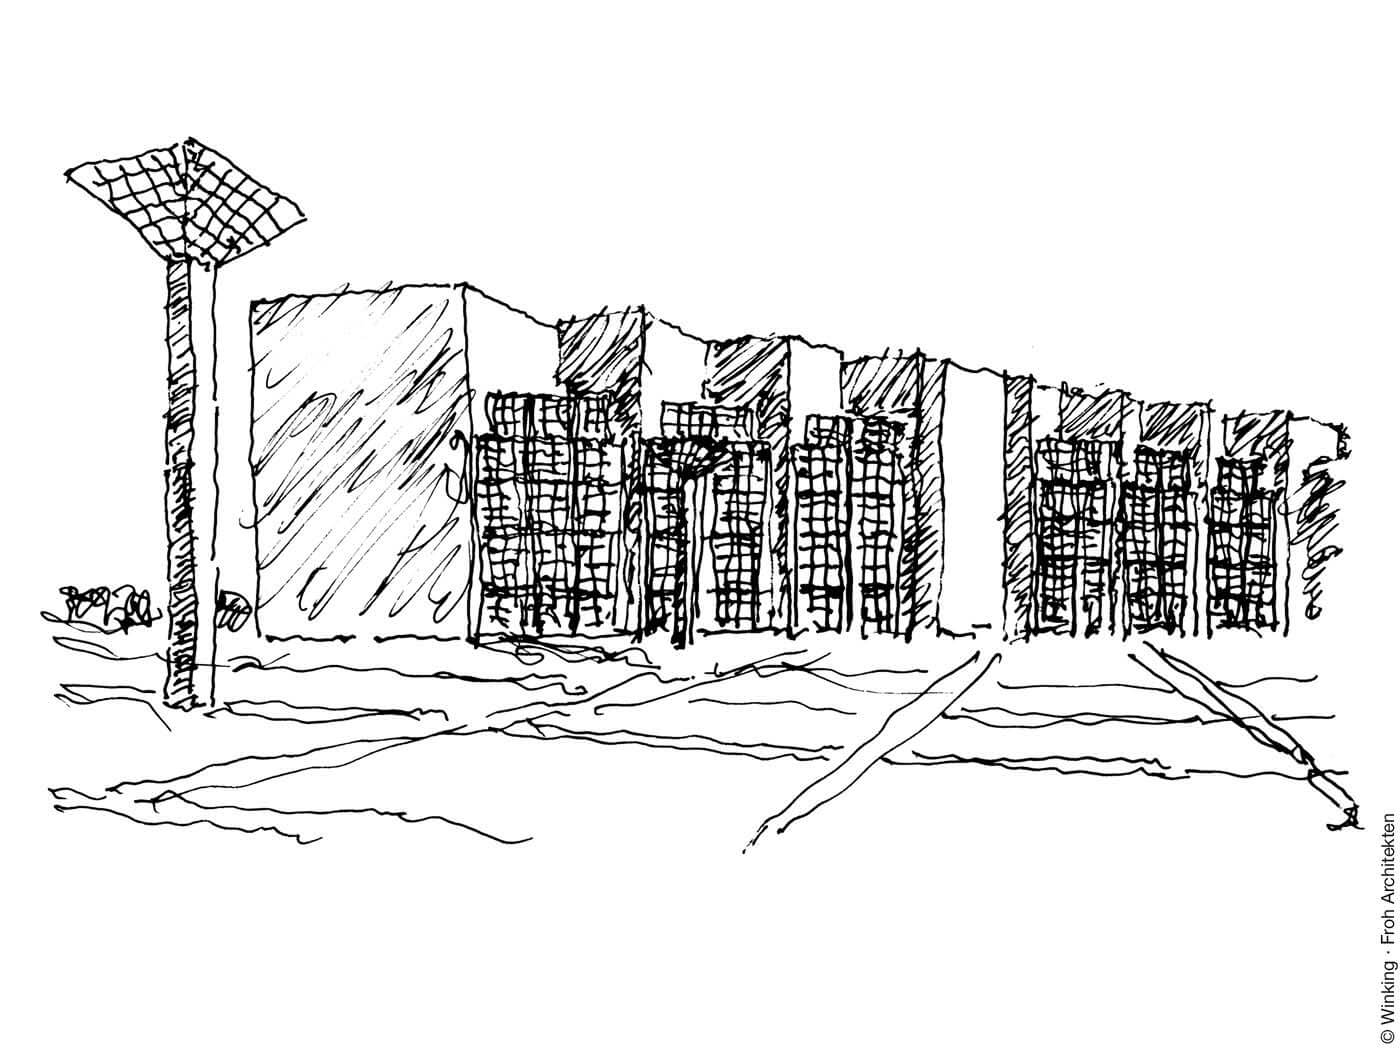 Zeichnung von Bernhard Winking: Arne Jacobsen, Rathaus, Mainz